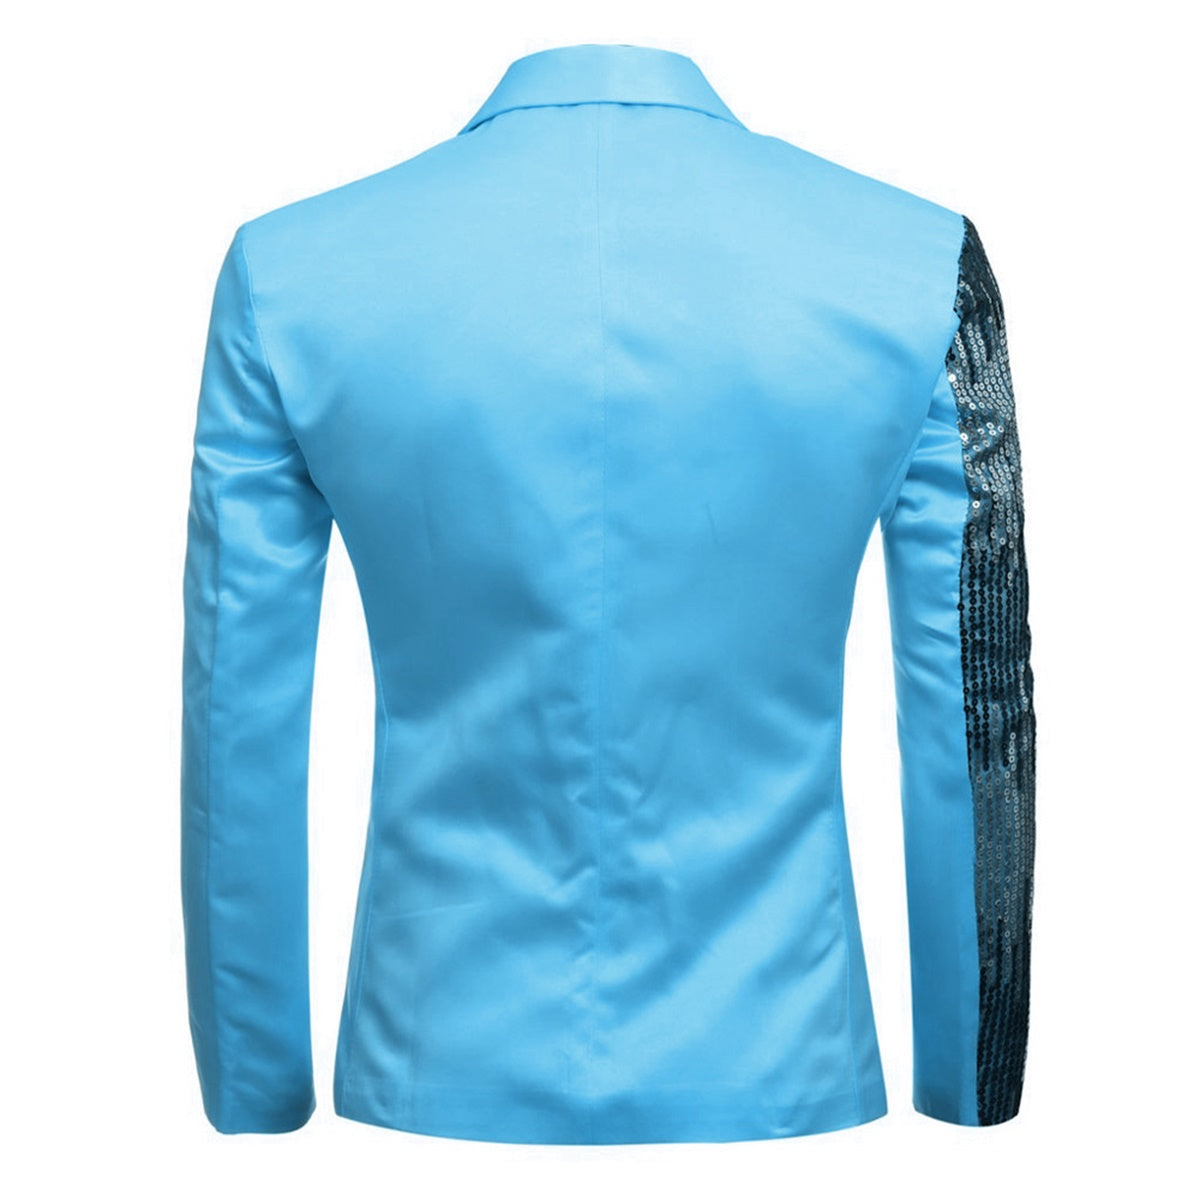 Prom Stylish Sequin Suit 2-Piece Baby Blue Suit